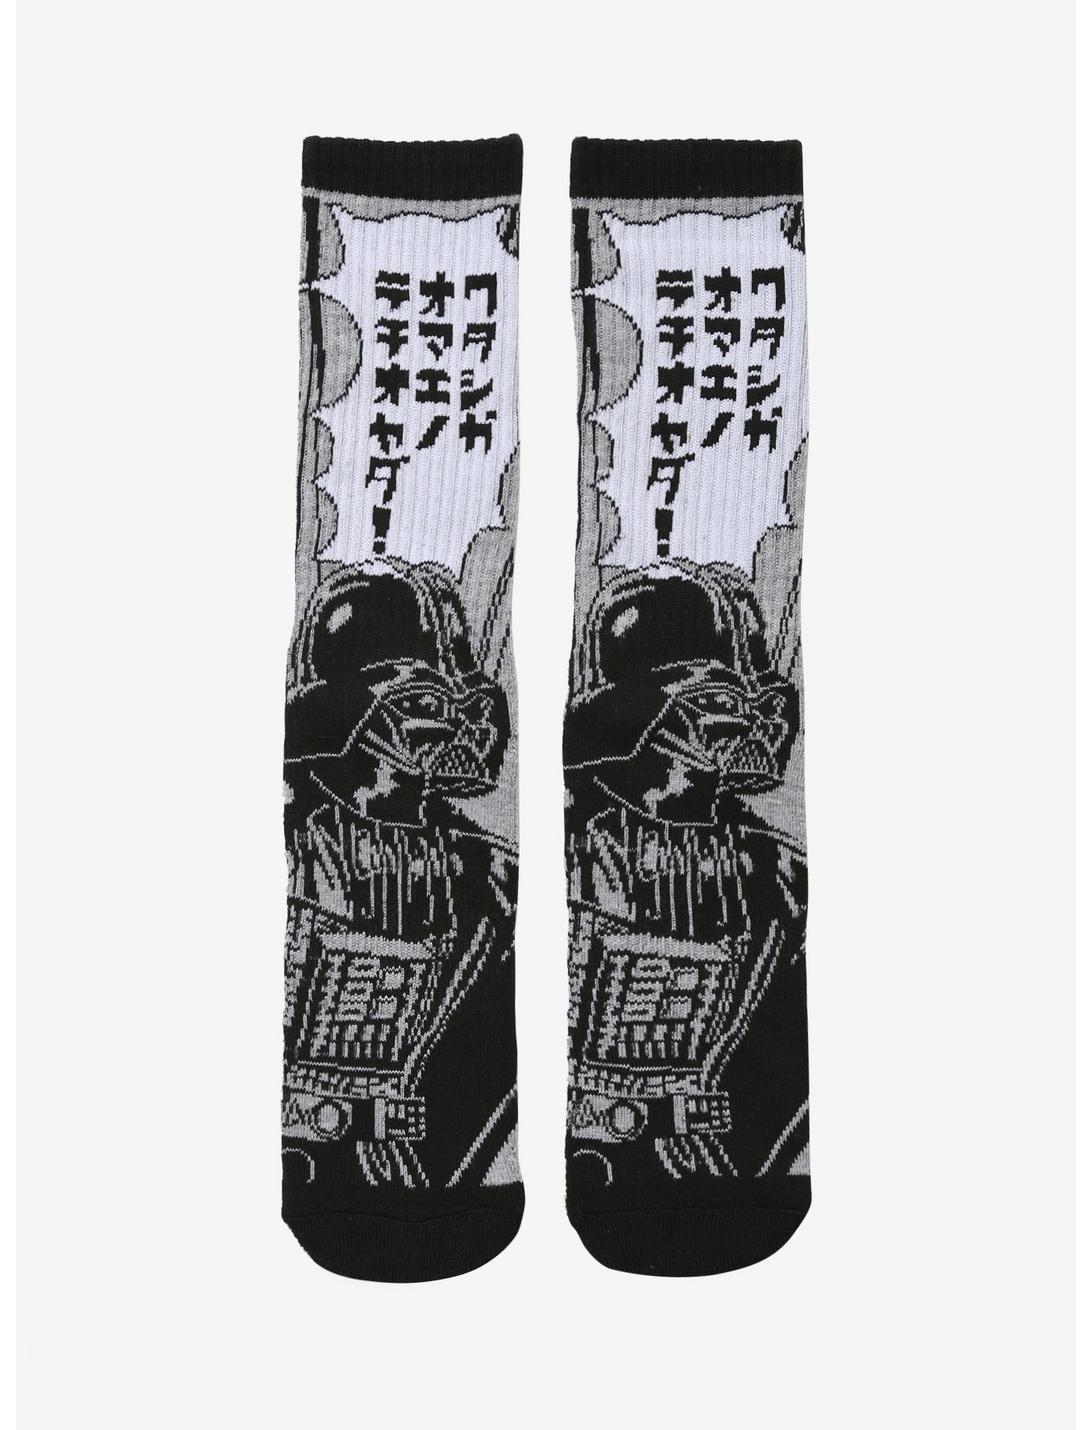 Star Wars Darth Vader Katakana Socks - BoxLunch Exclusive, , hi-res